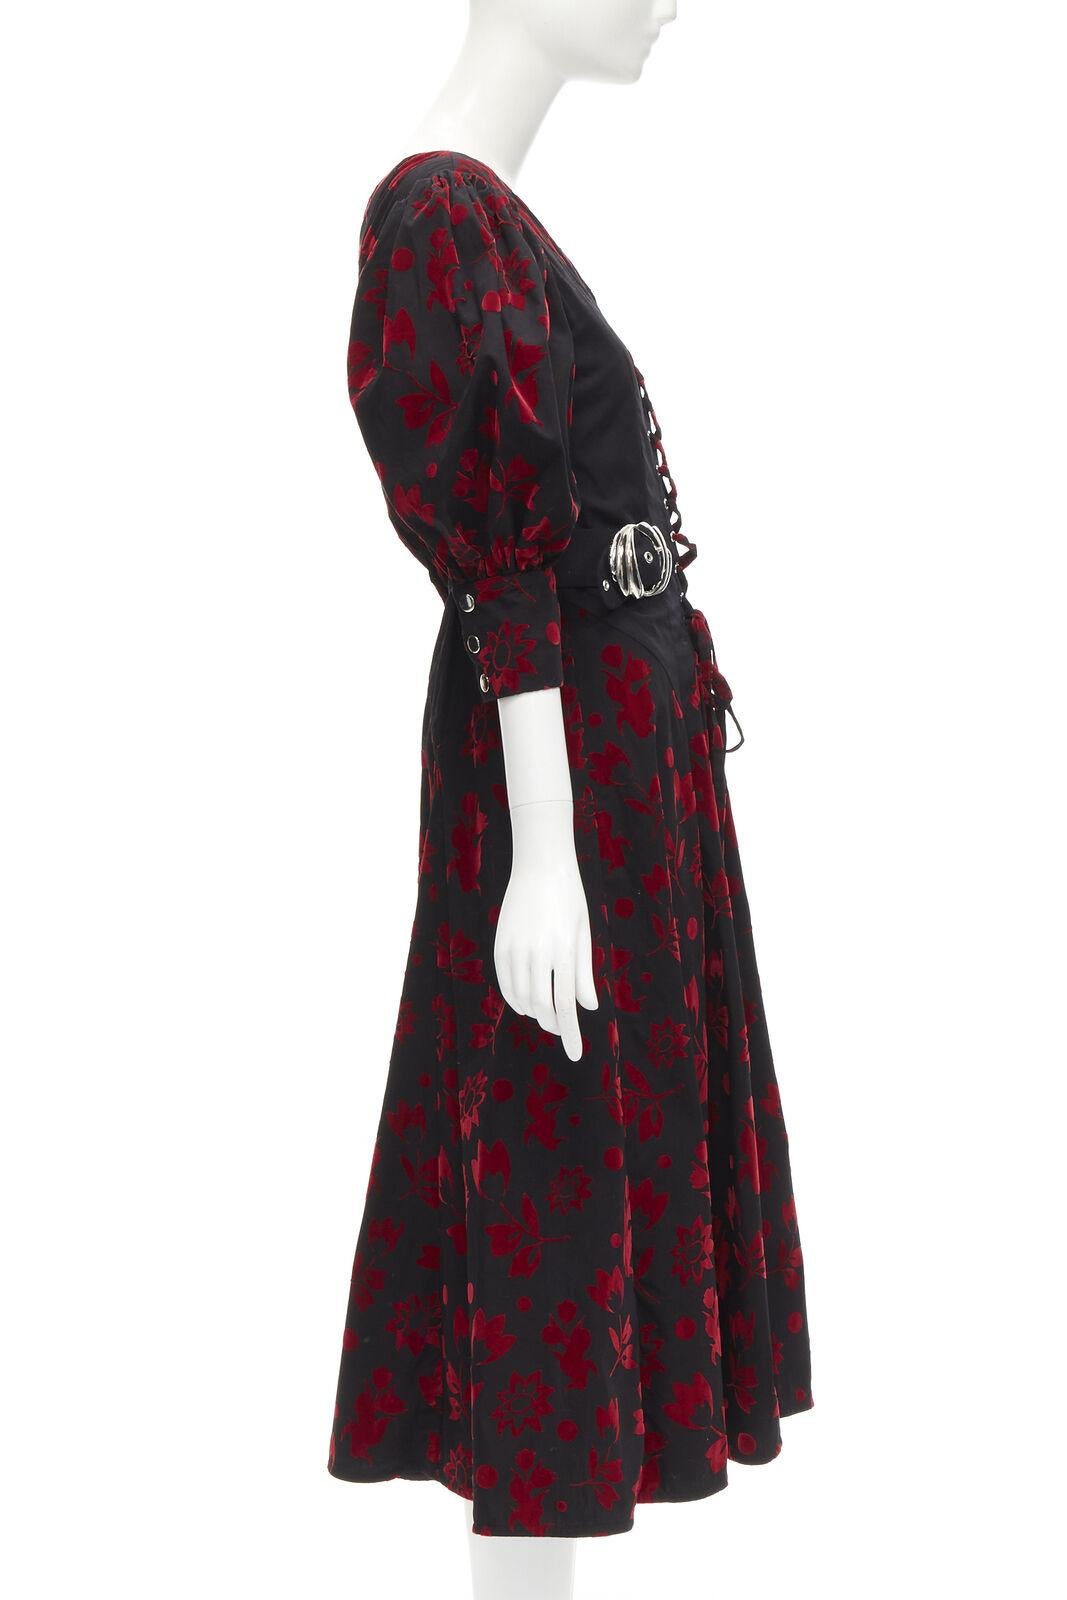 CHOPOVA LOWENA - Robe corset victorienne noire en velours rouge à crochet papillons floraux S Excellent état - En vente à Hong Kong, NT